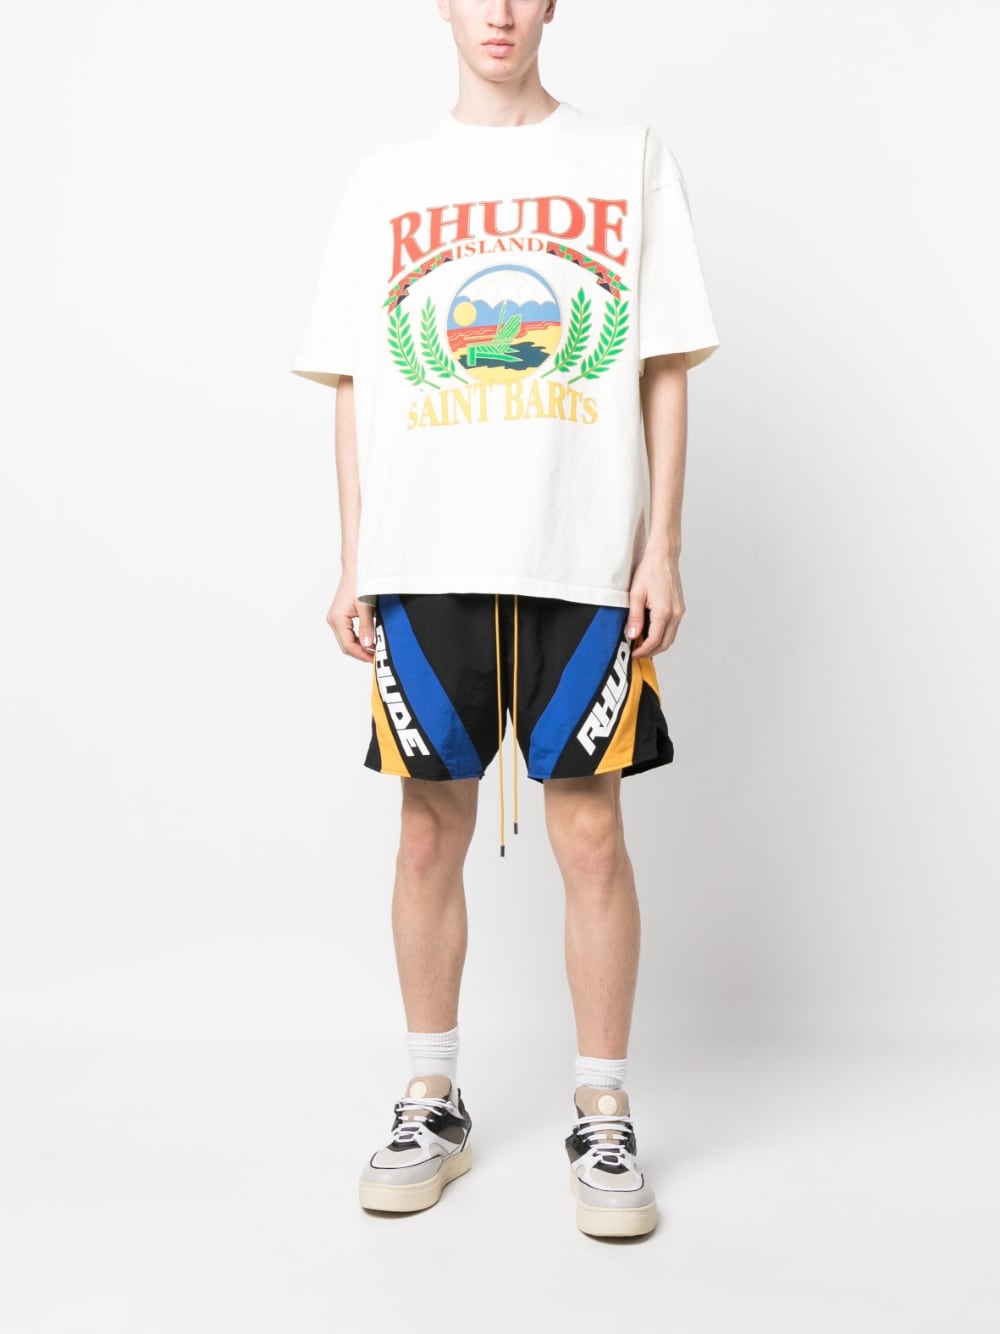 RHUDE - T-shirt en coton beach chair blanc